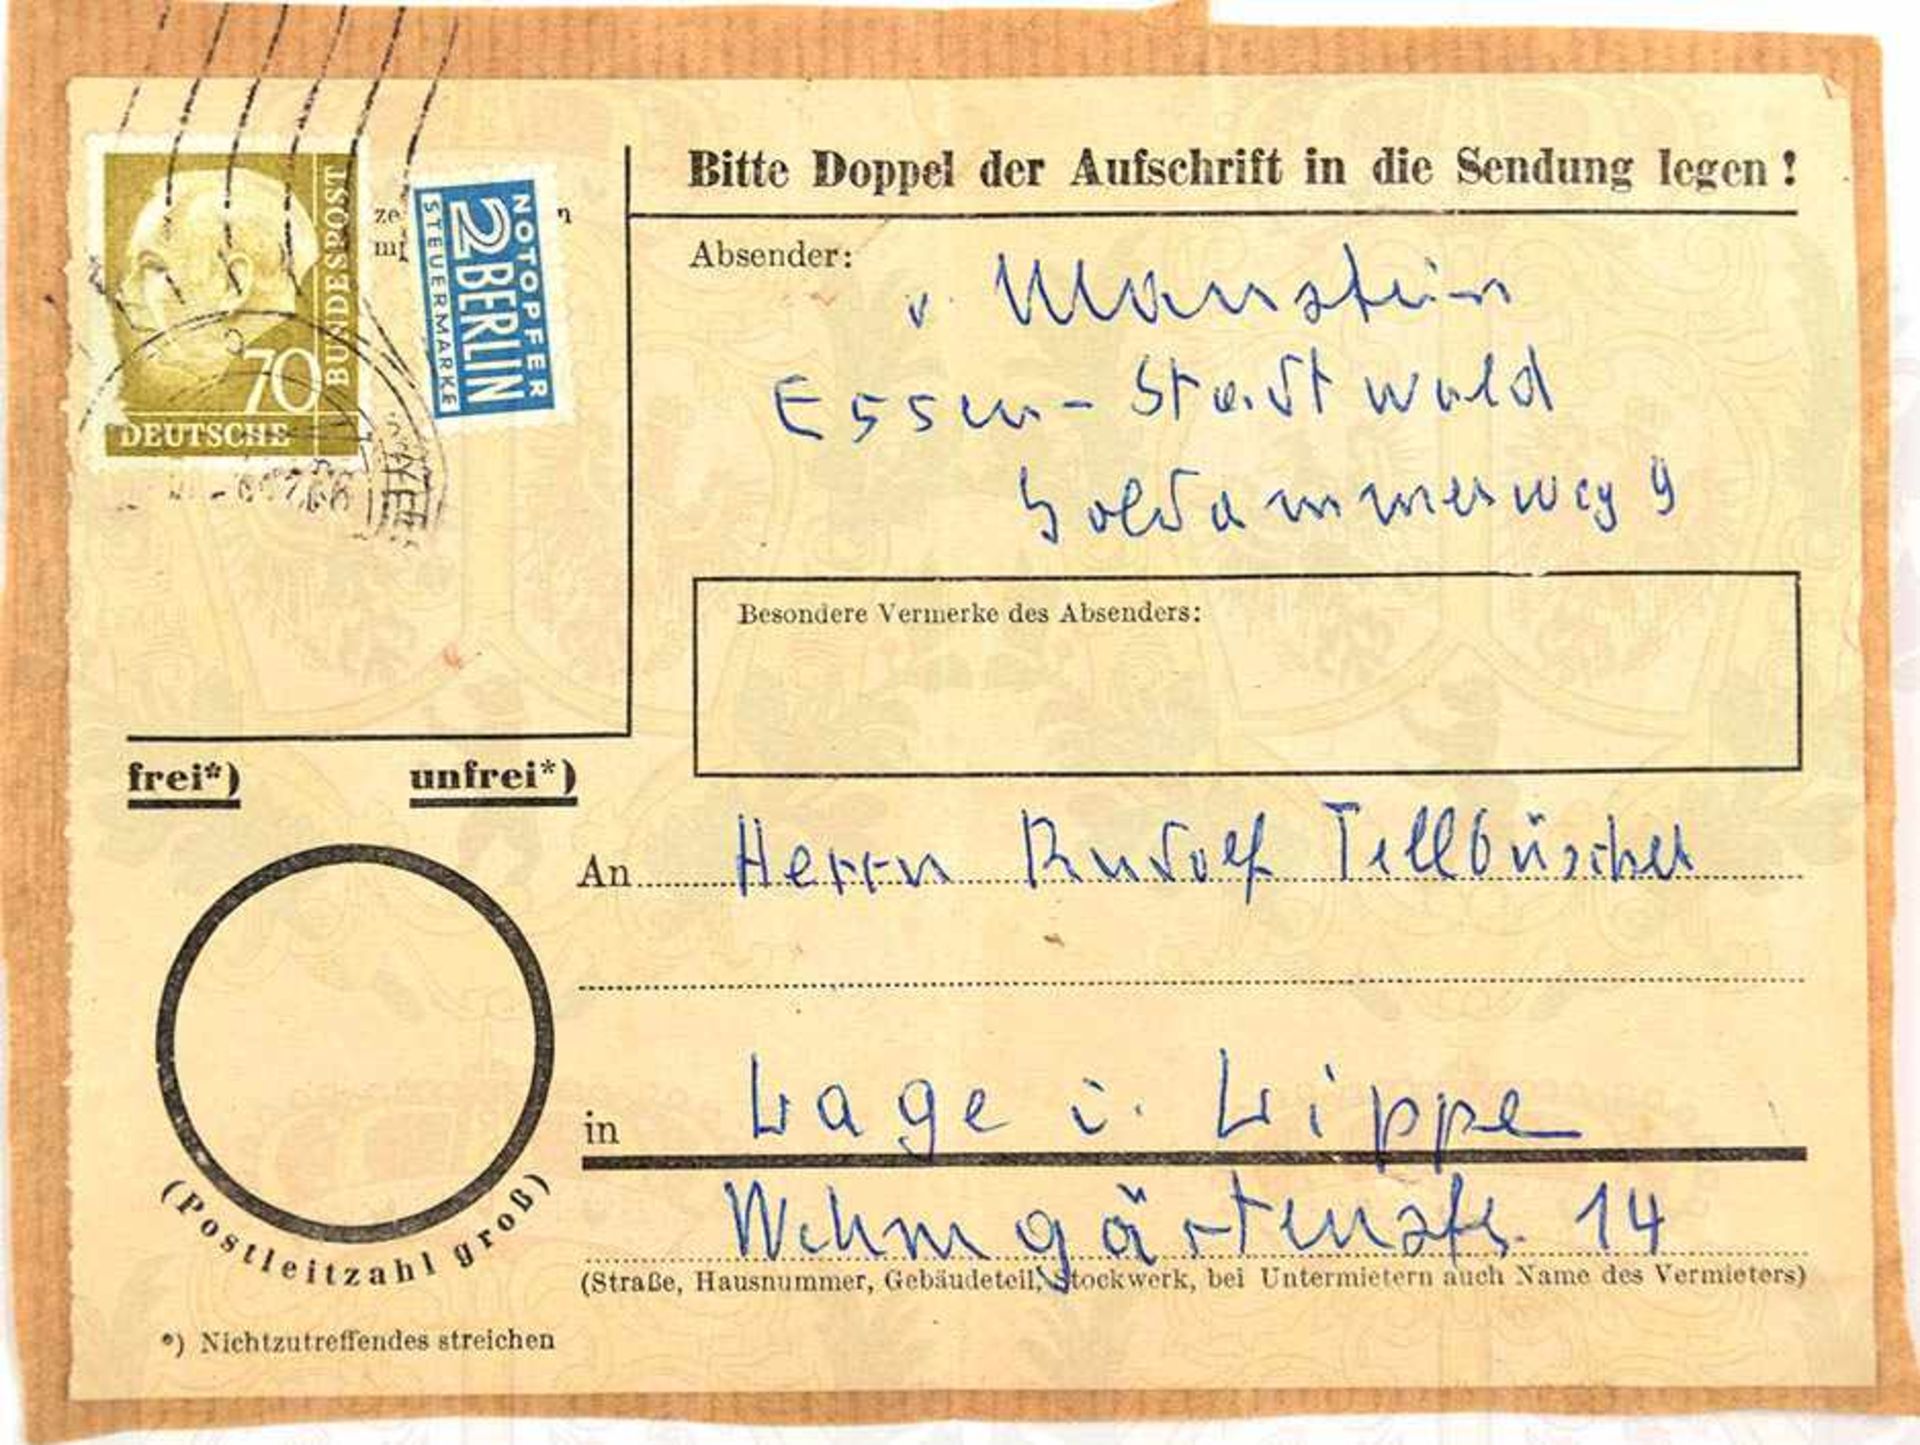 VON MANSTEIN, ERICH, (1887-1973), Generalfeldmarschall u. Oberbefehlshaber der Heeresgruppe Don,